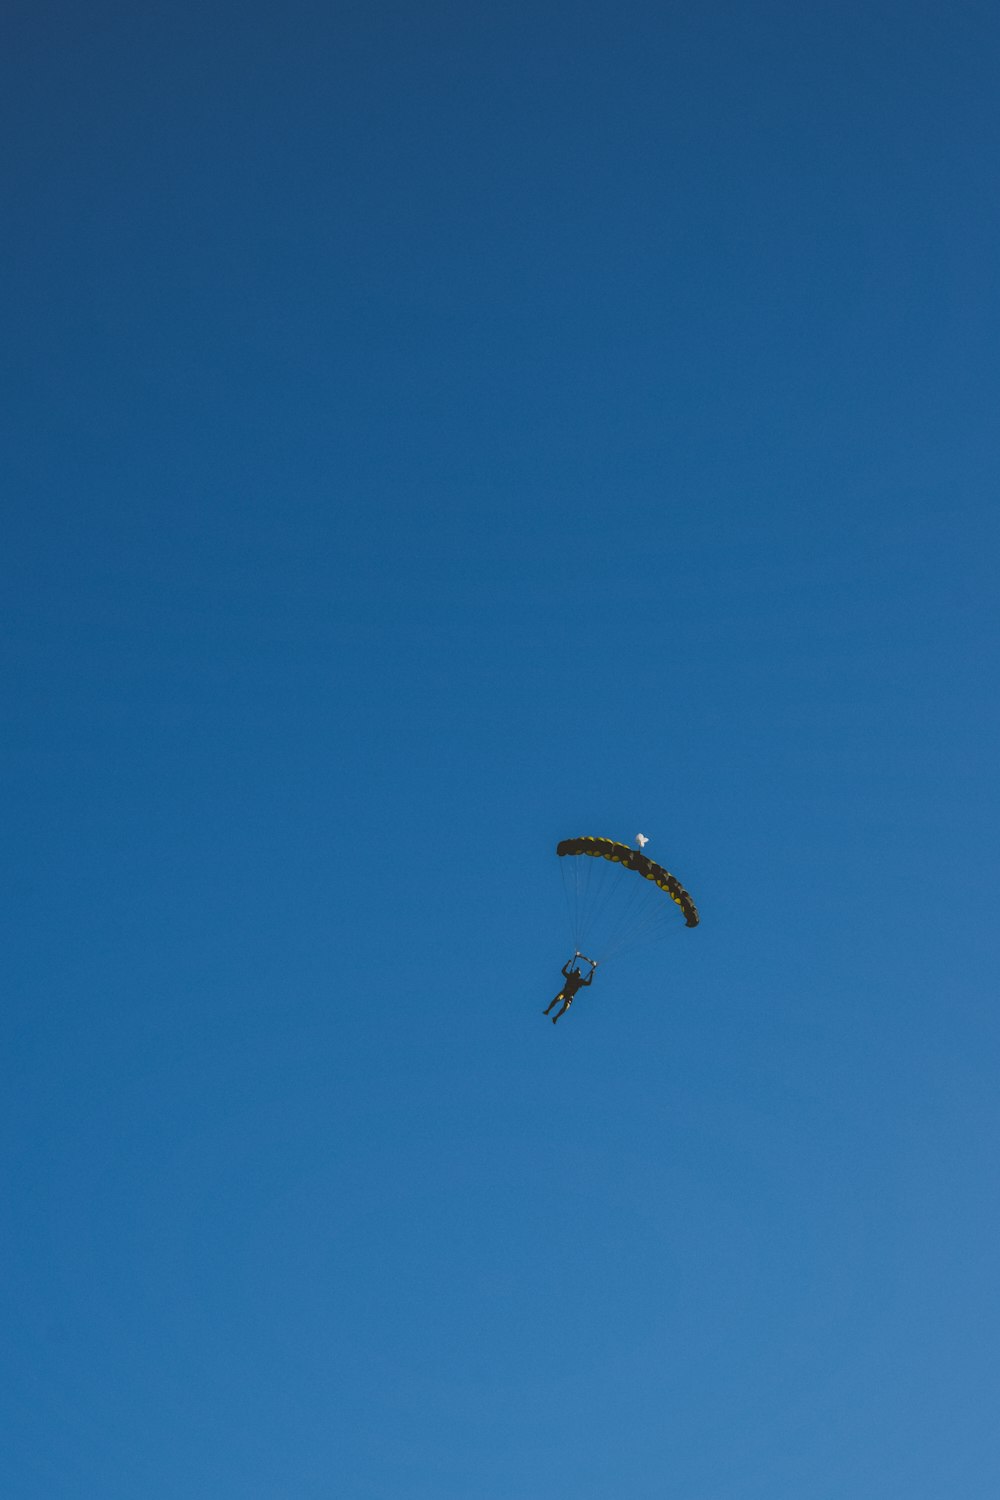 Una persona está haciendo parasailing en el cielo azul